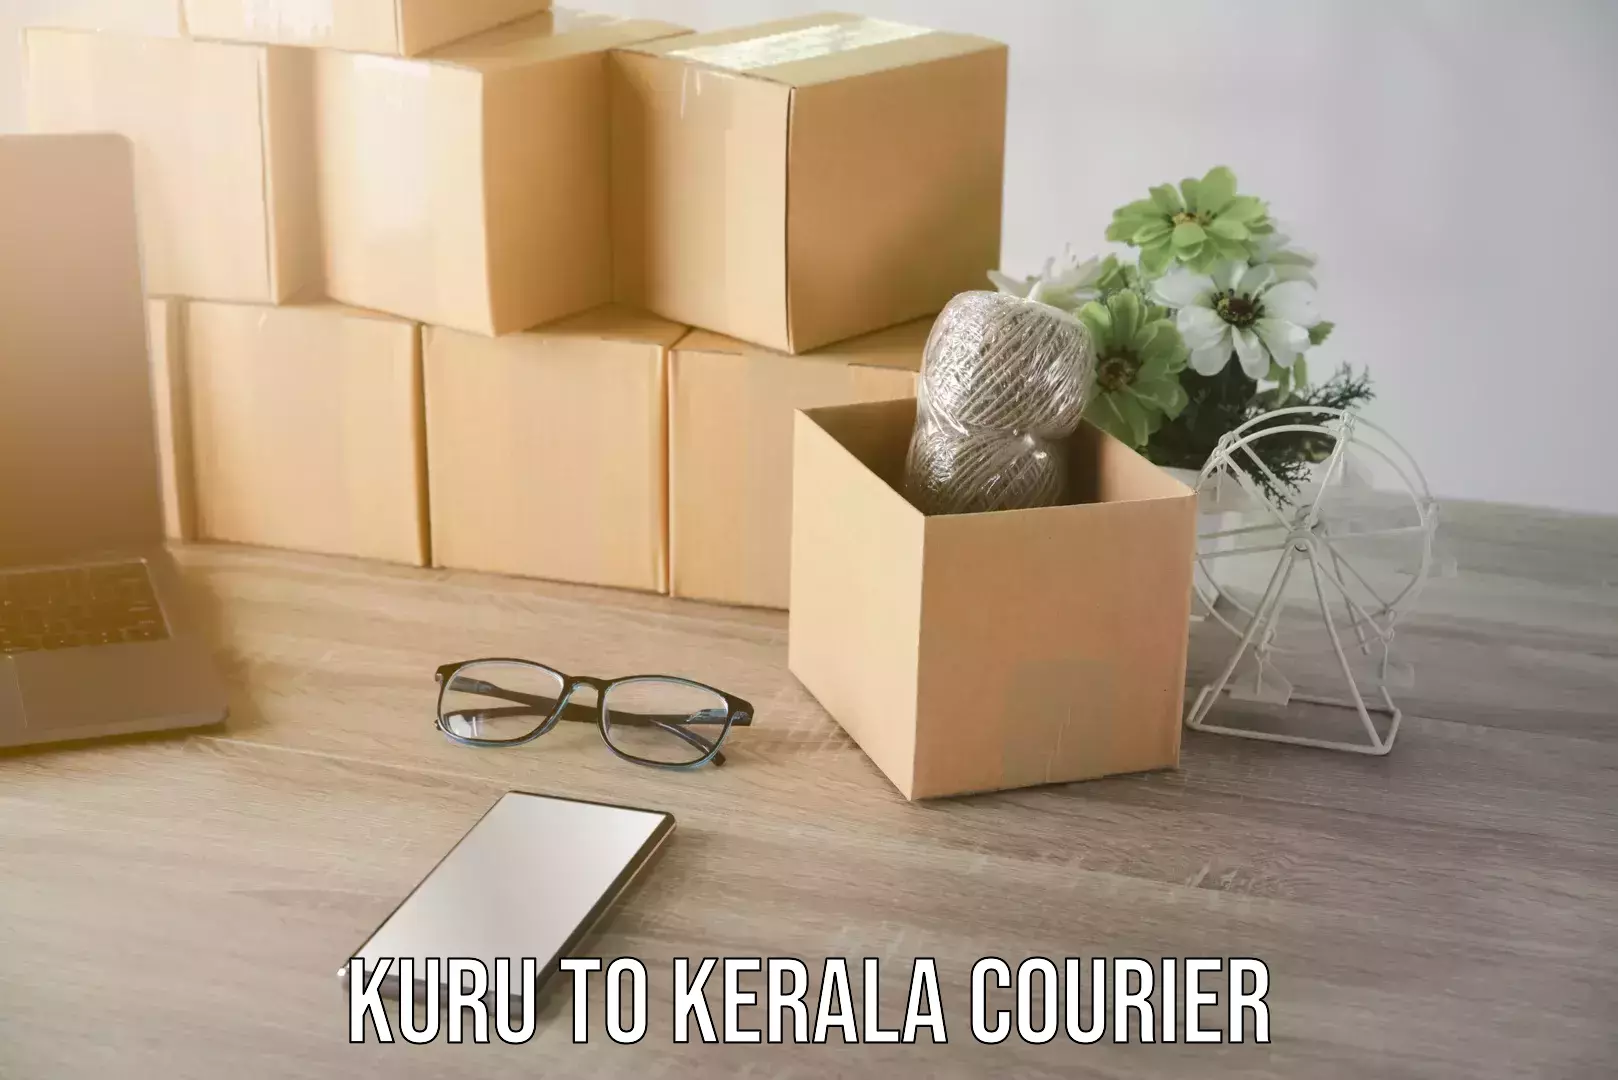 Skilled furniture movers Kuru to Kerala